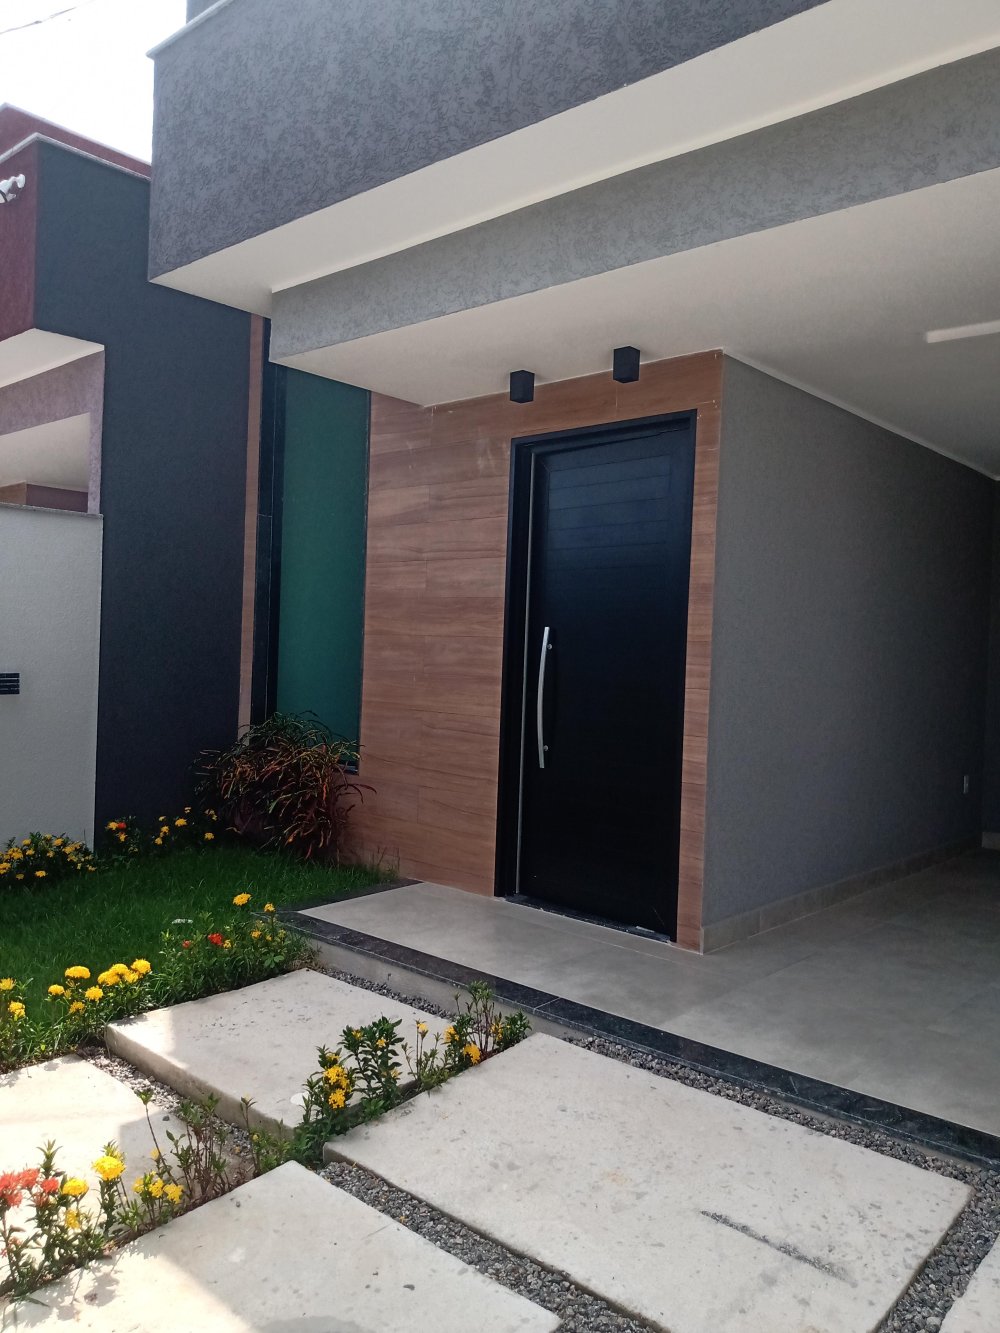 Casa  venda  no Jardim Atlntico Leste (itaipuau) - Maric, RJ. Imveis